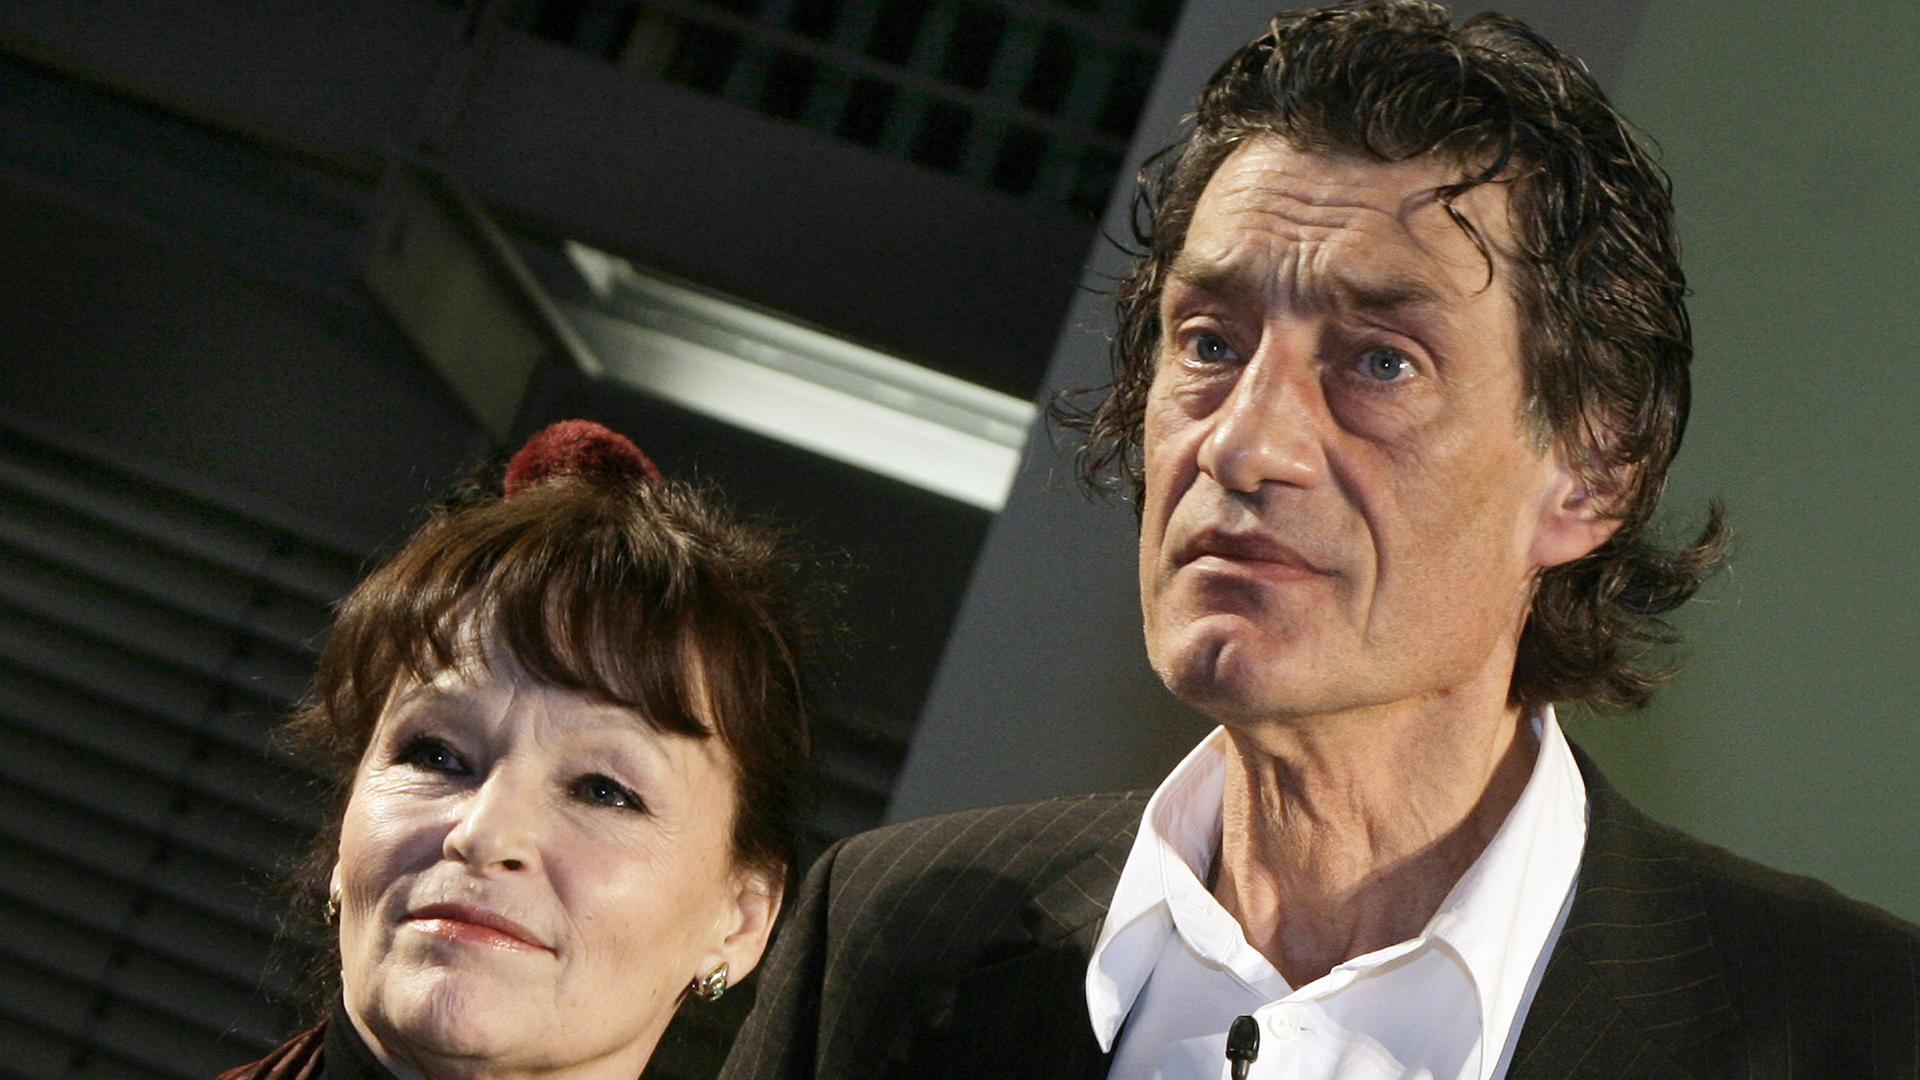 Die Schauspieler Angelica Domröse und Winfried Glatzeder, bekannt durch den DDR-Kultfilm "Die Legende von Paul und Paula" von 1973 - hier 2008 bei einer Signierstunde in Berlin